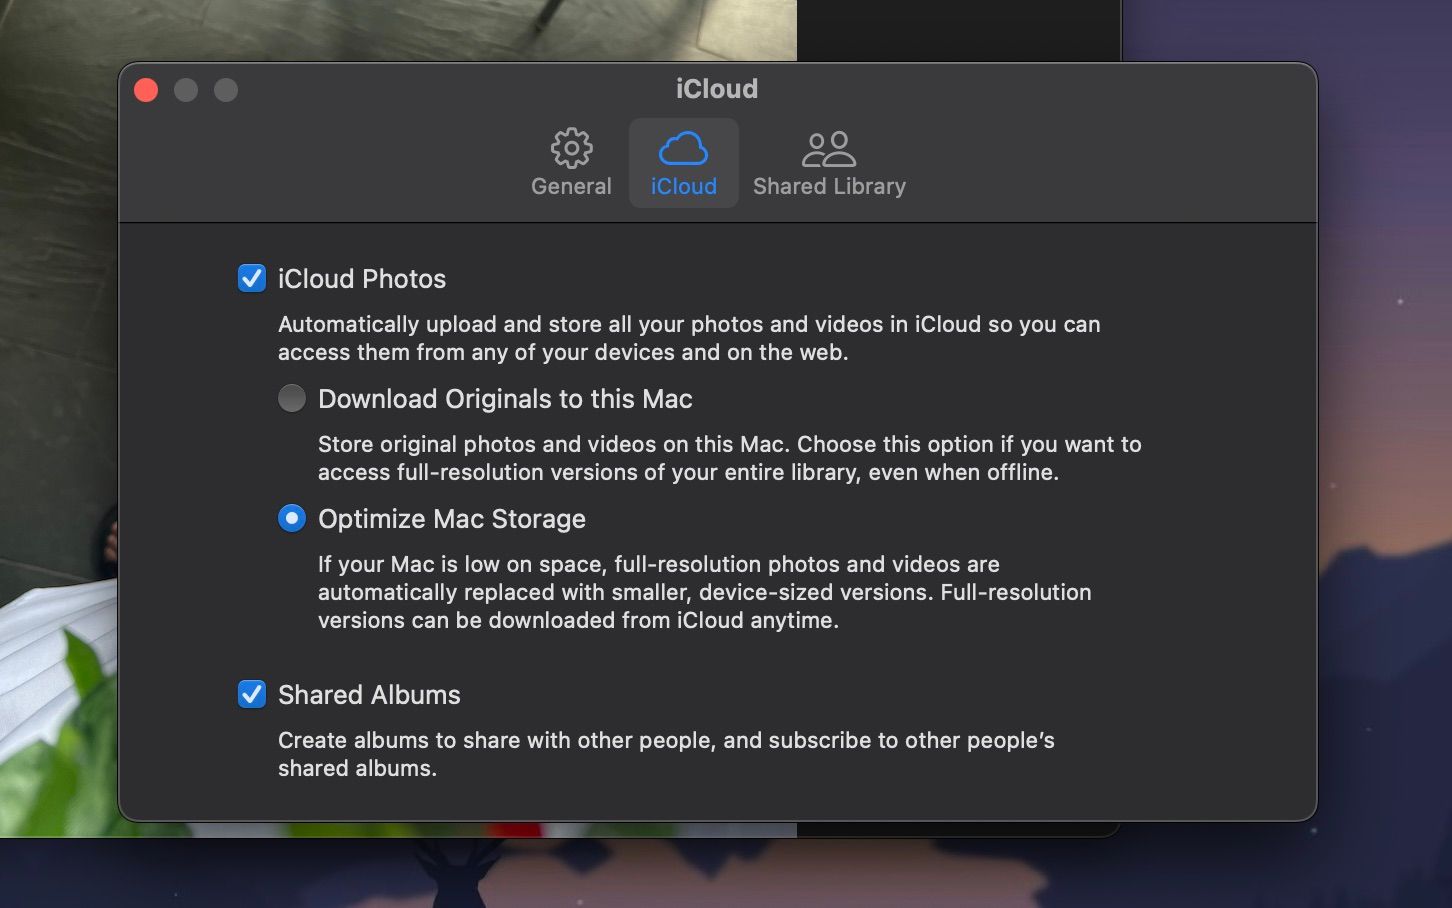 Configurações do iCloud Photos com o Optimize Mac Storage ativado